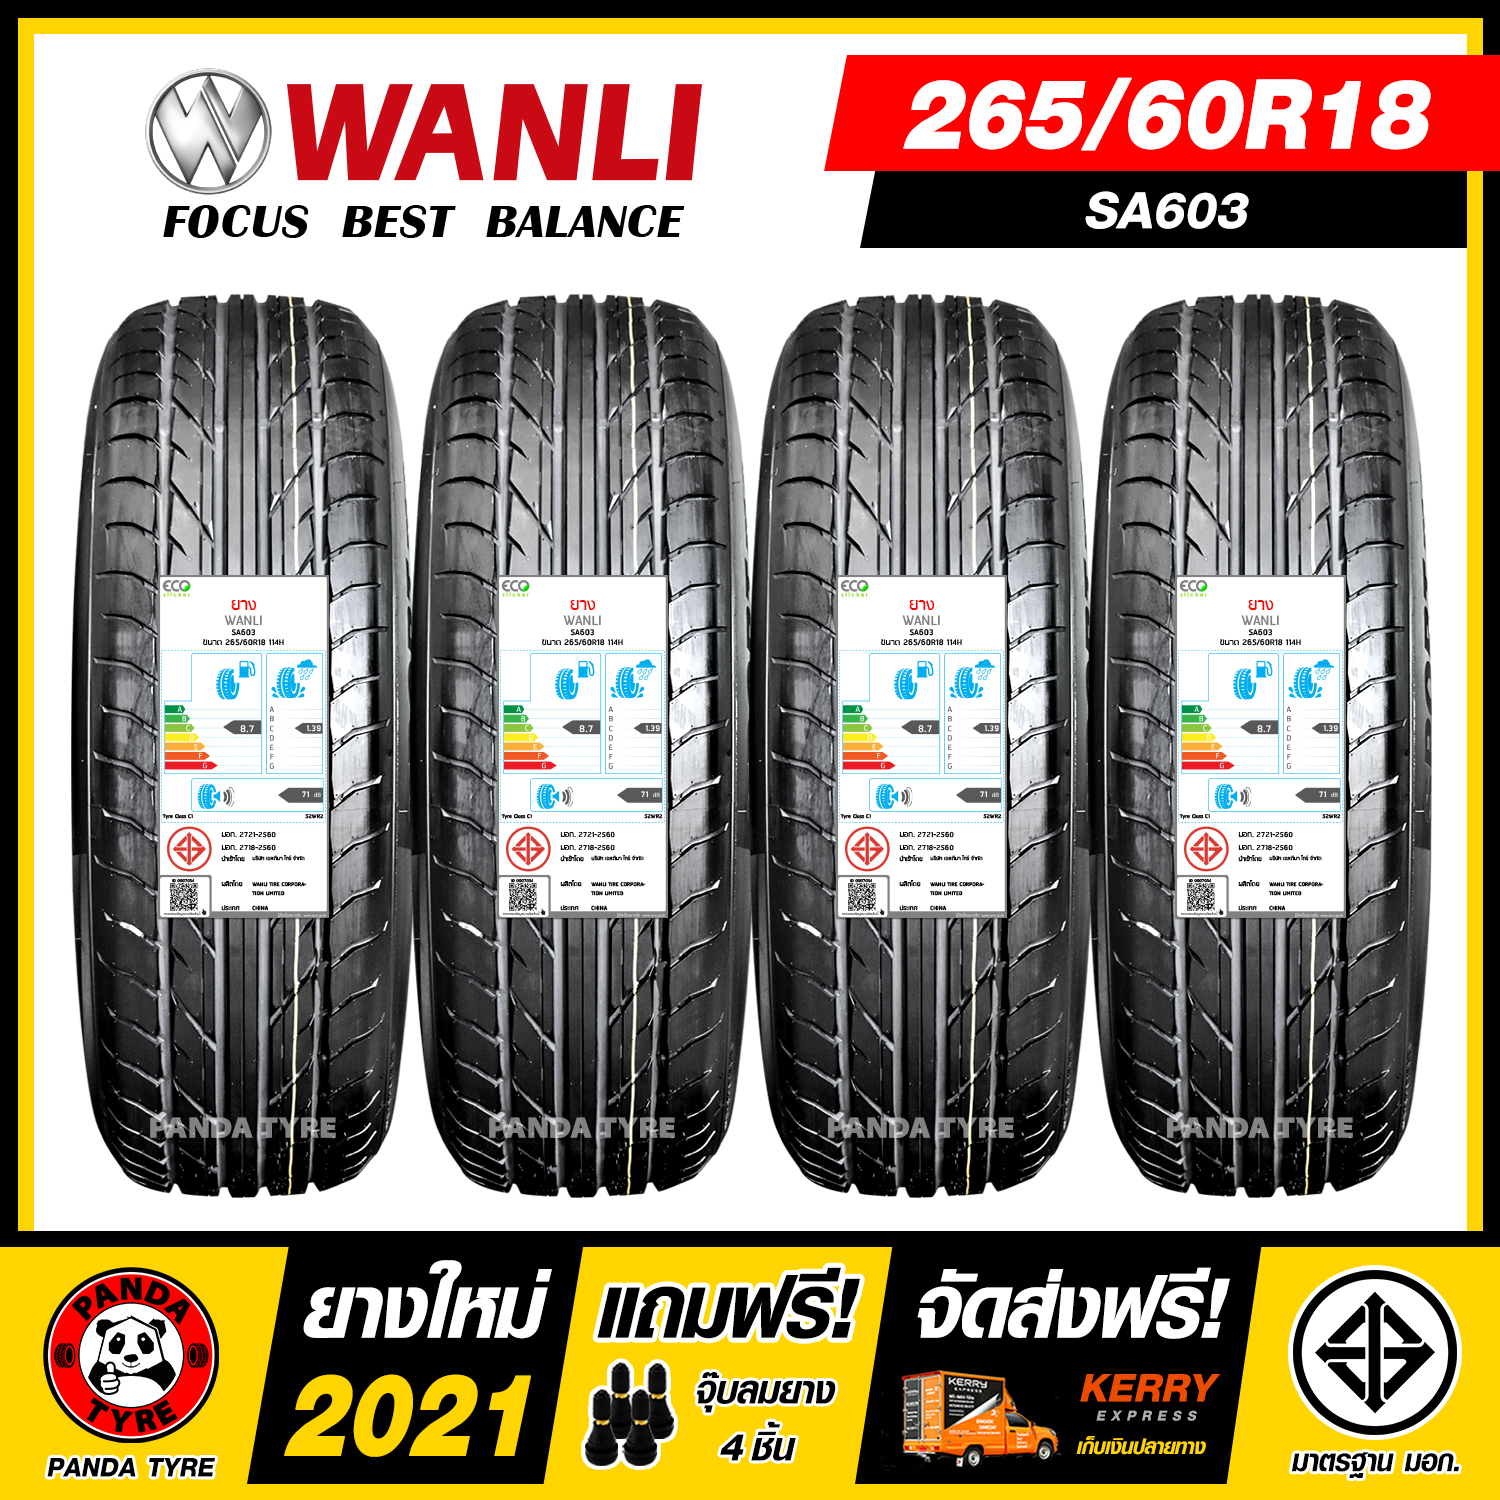 WANLI 265/60R18 ยางรถยนต์ขอบ18 รุ่น SA603 - 4 เส้น (ยางใหม่ผลิตปี 2021)